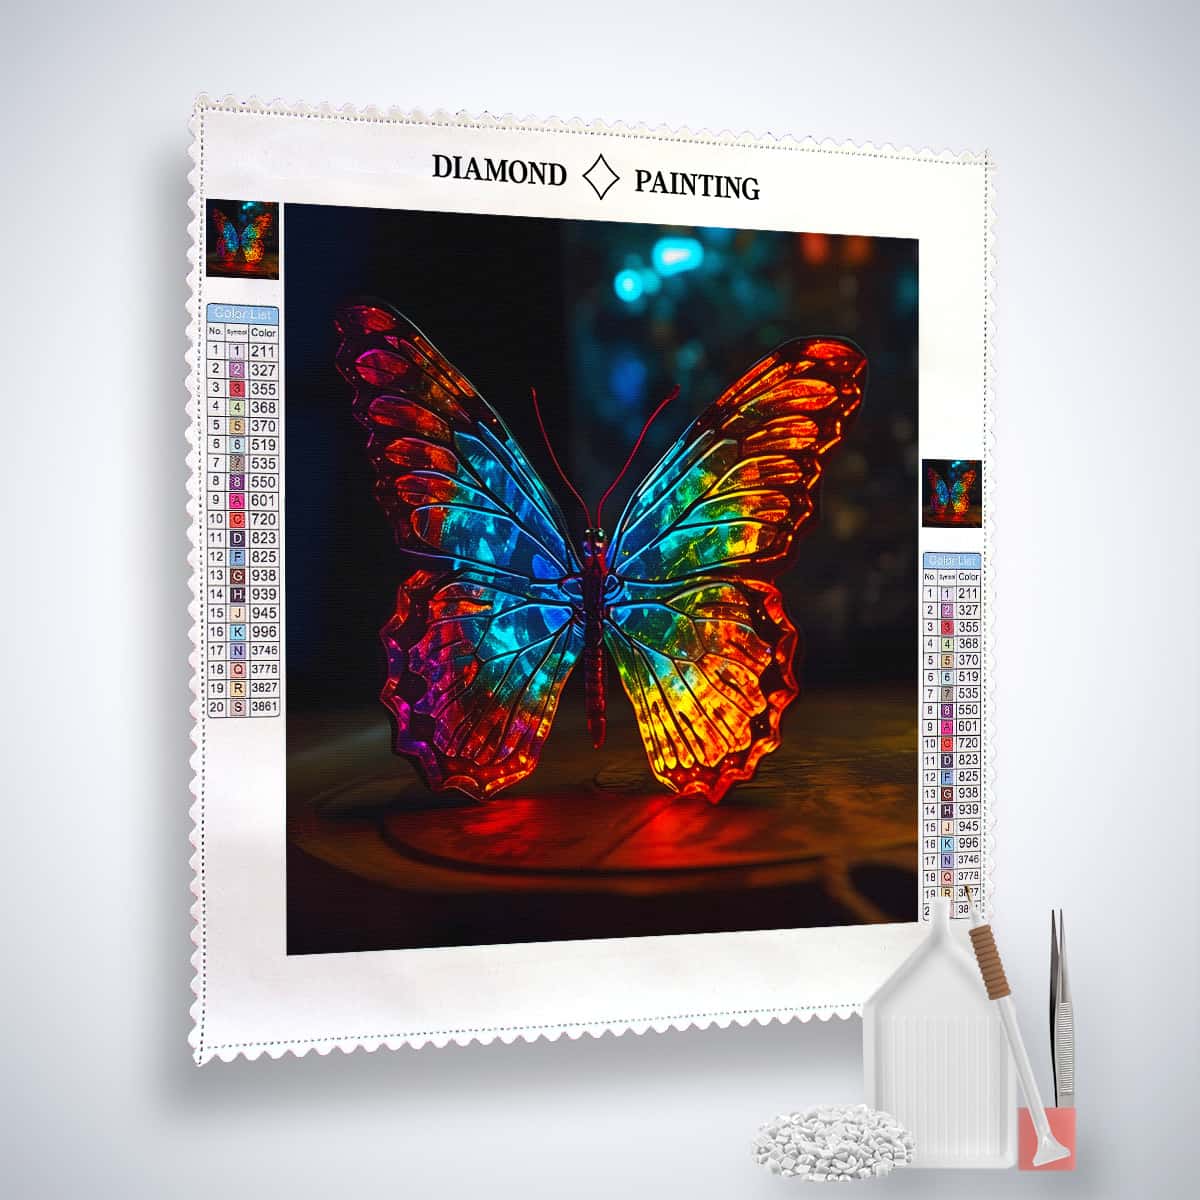 AB Diamond Painting - Schmetterling Frontal bei Nacht - gedruckt in Ultra-HD - AB Diamond, Neu eingetroffen, Quadratisch, Schmetterling, Tiere